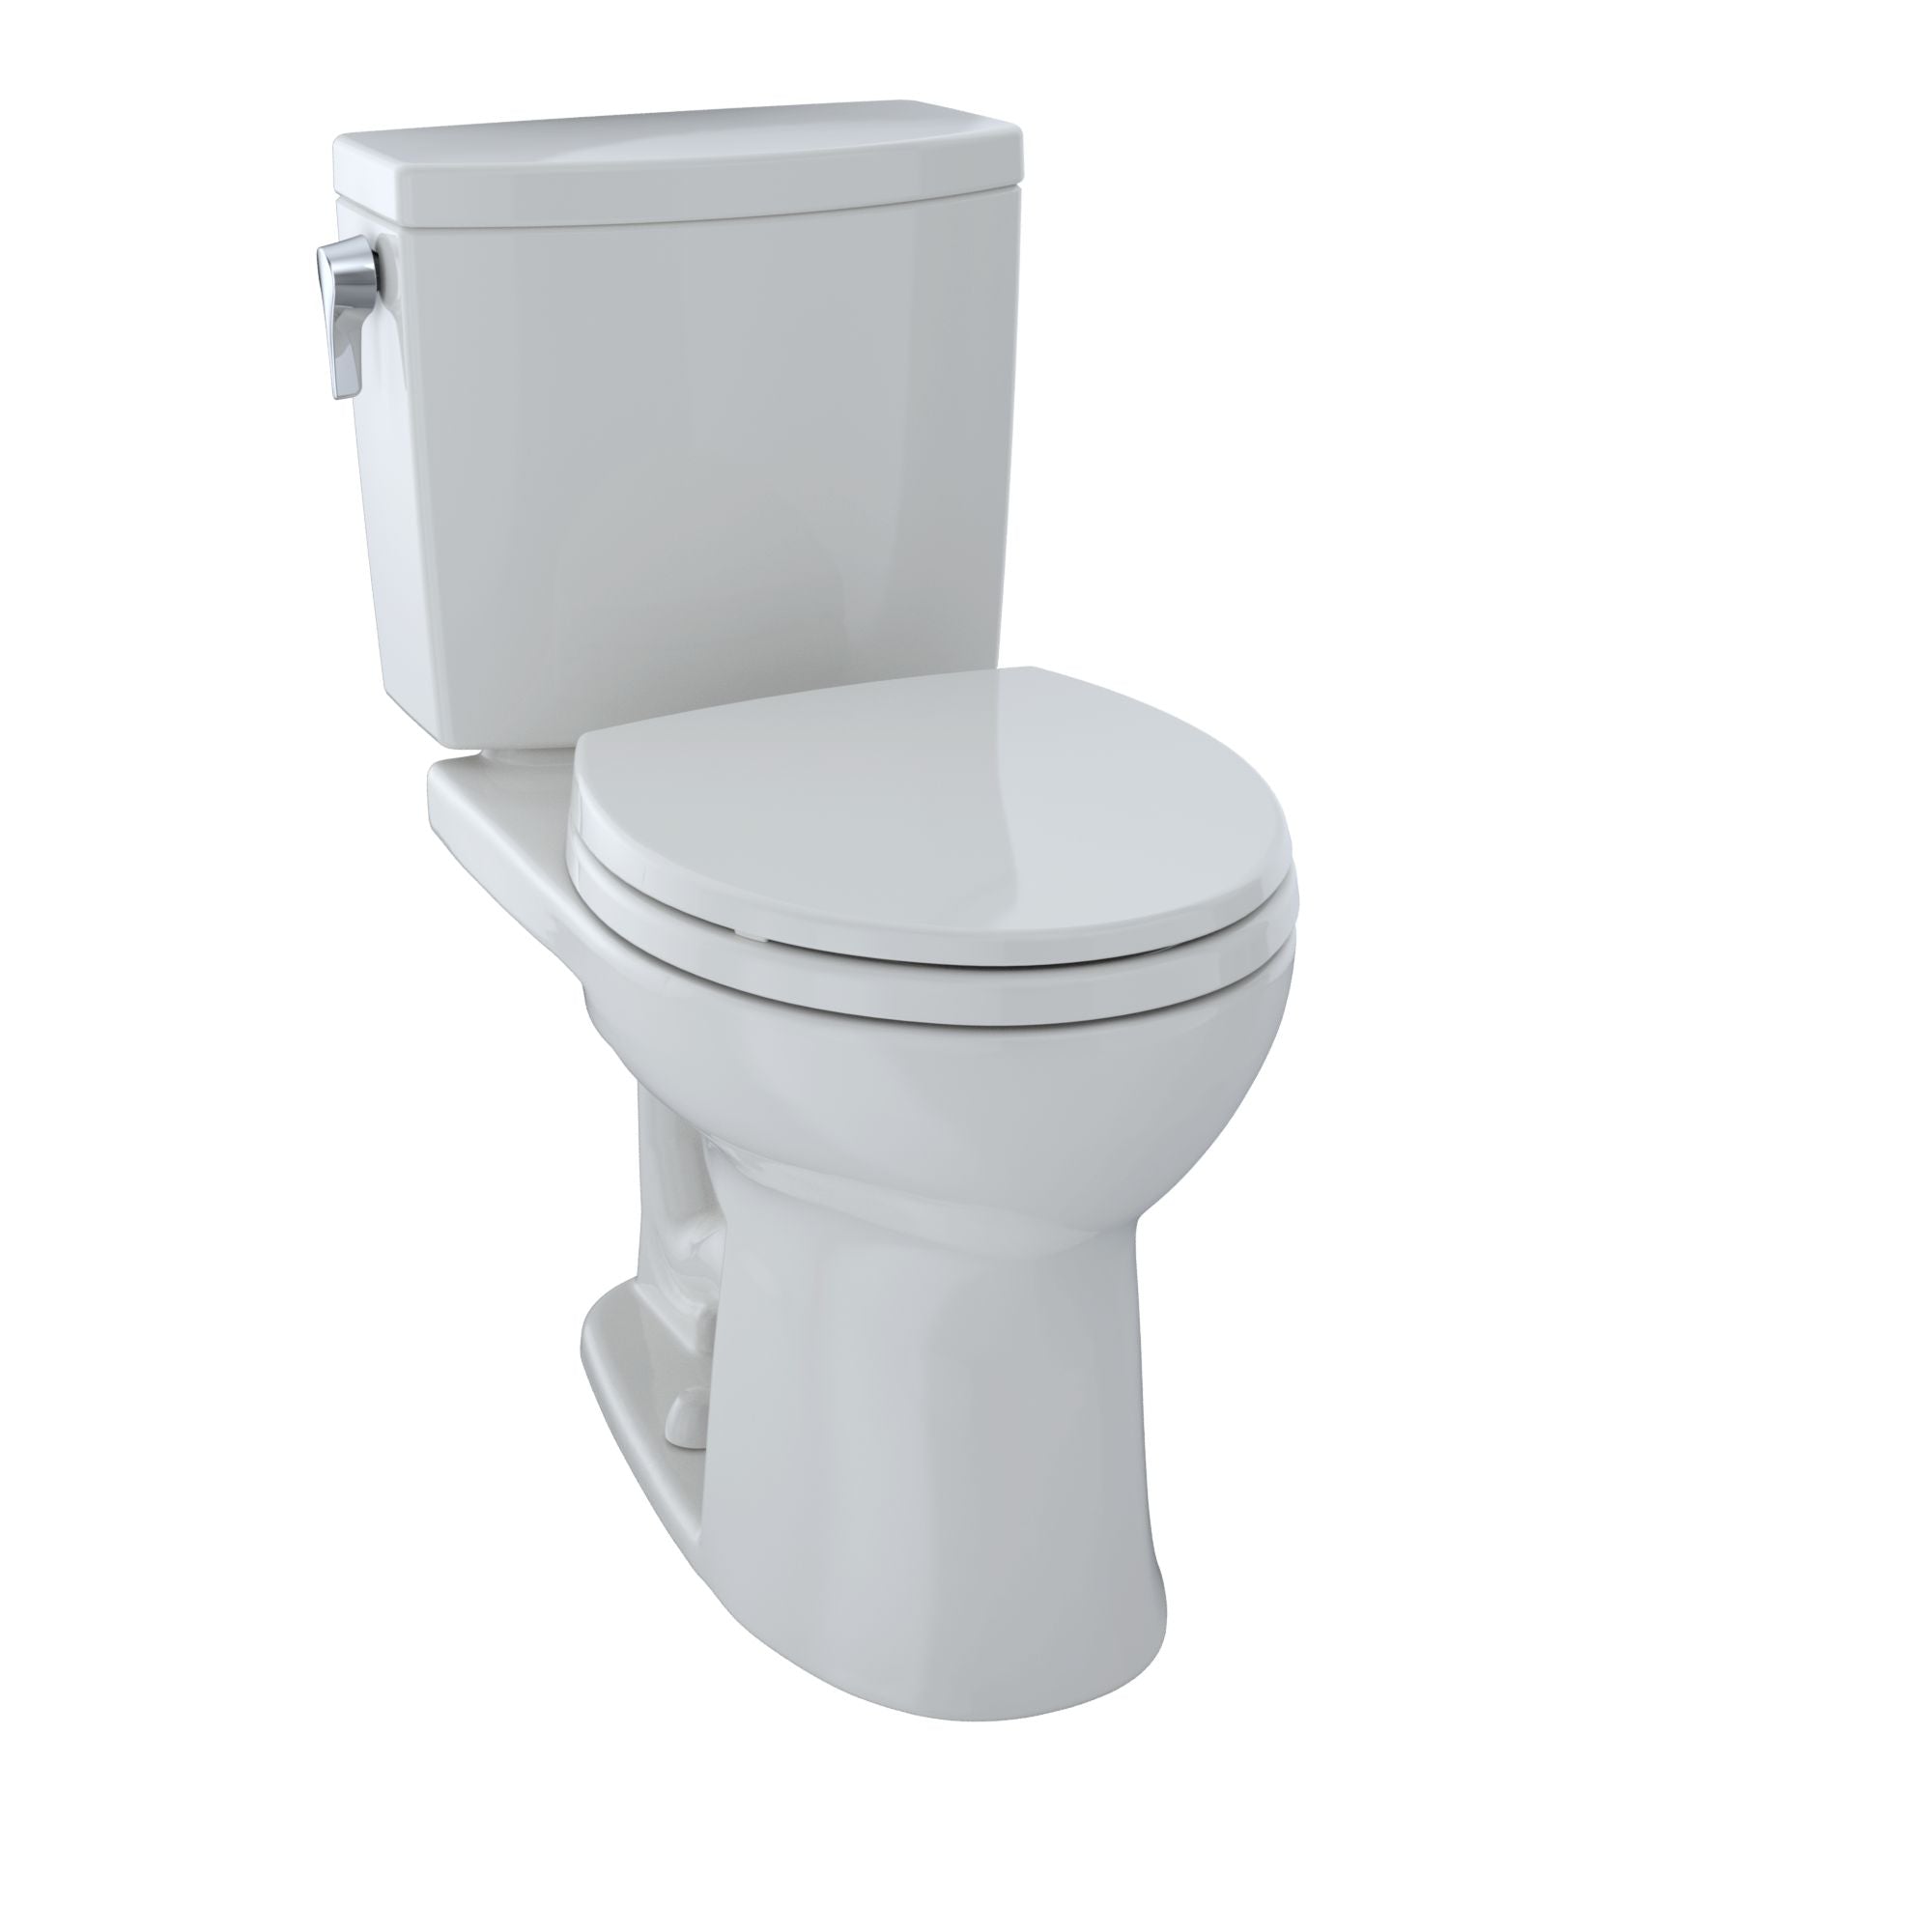 Toto Drake II Two-piece Toilet Round Bowl 1.0 GPF